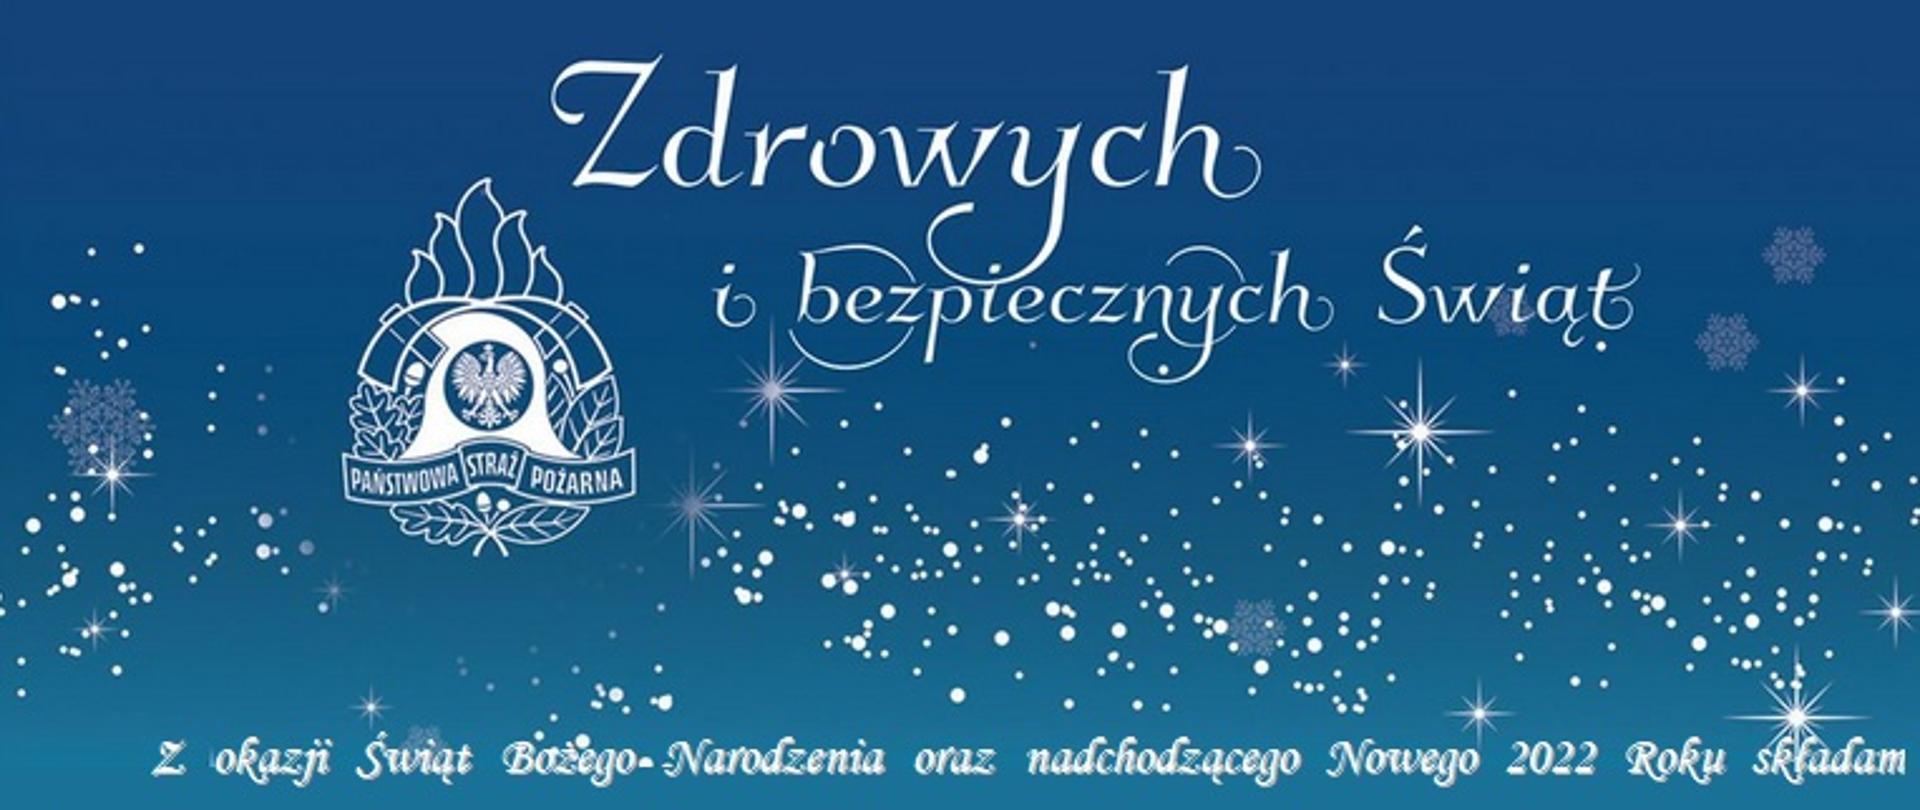 Życzenia Święta Bożego Narodzenia 2021 i Nowego Roku 2022 Komendanta Miejskiego PSP w Suwałkach
